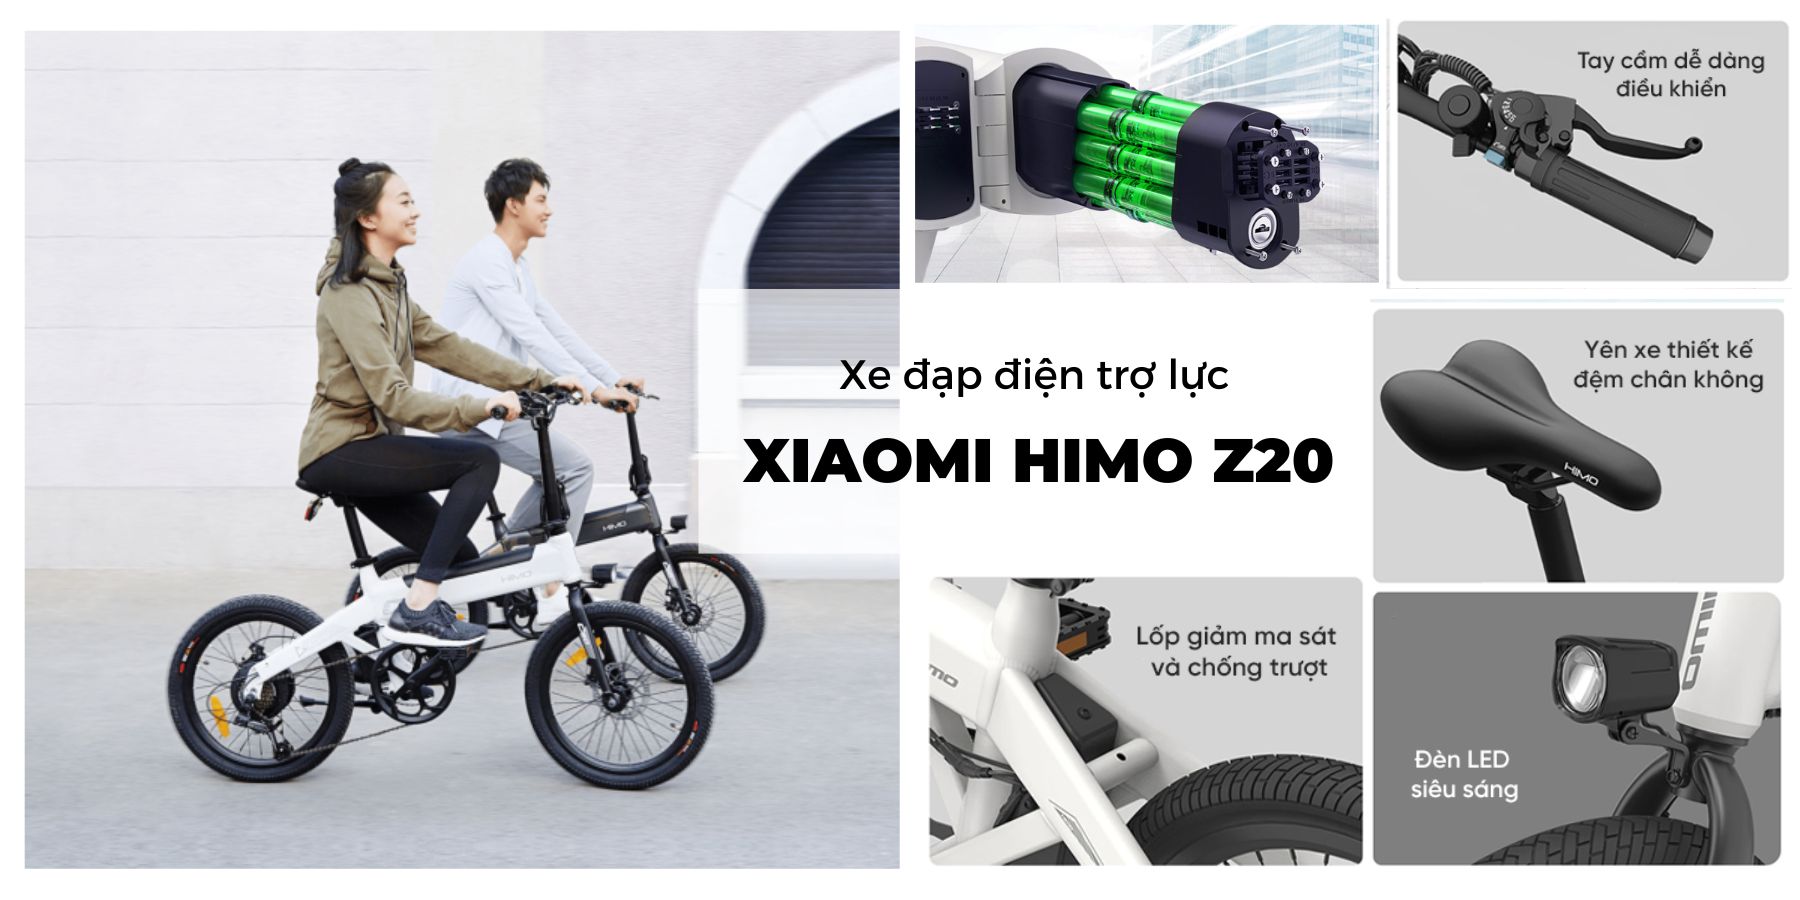 Xe đạp điện trợ lực Xiaomi Himo Z20 - AKIA NHA TRANG